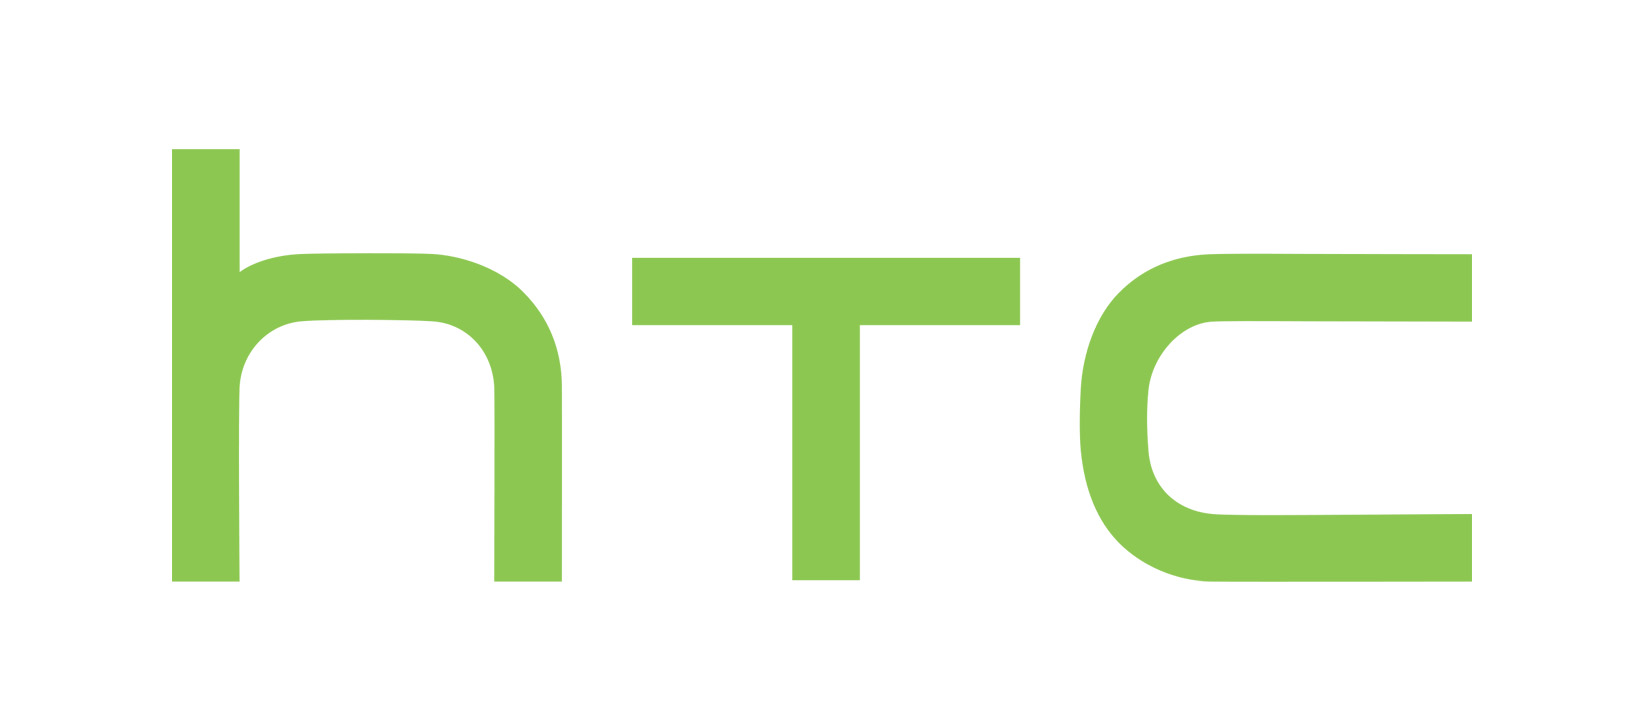 webHTC-logo copy.jpg